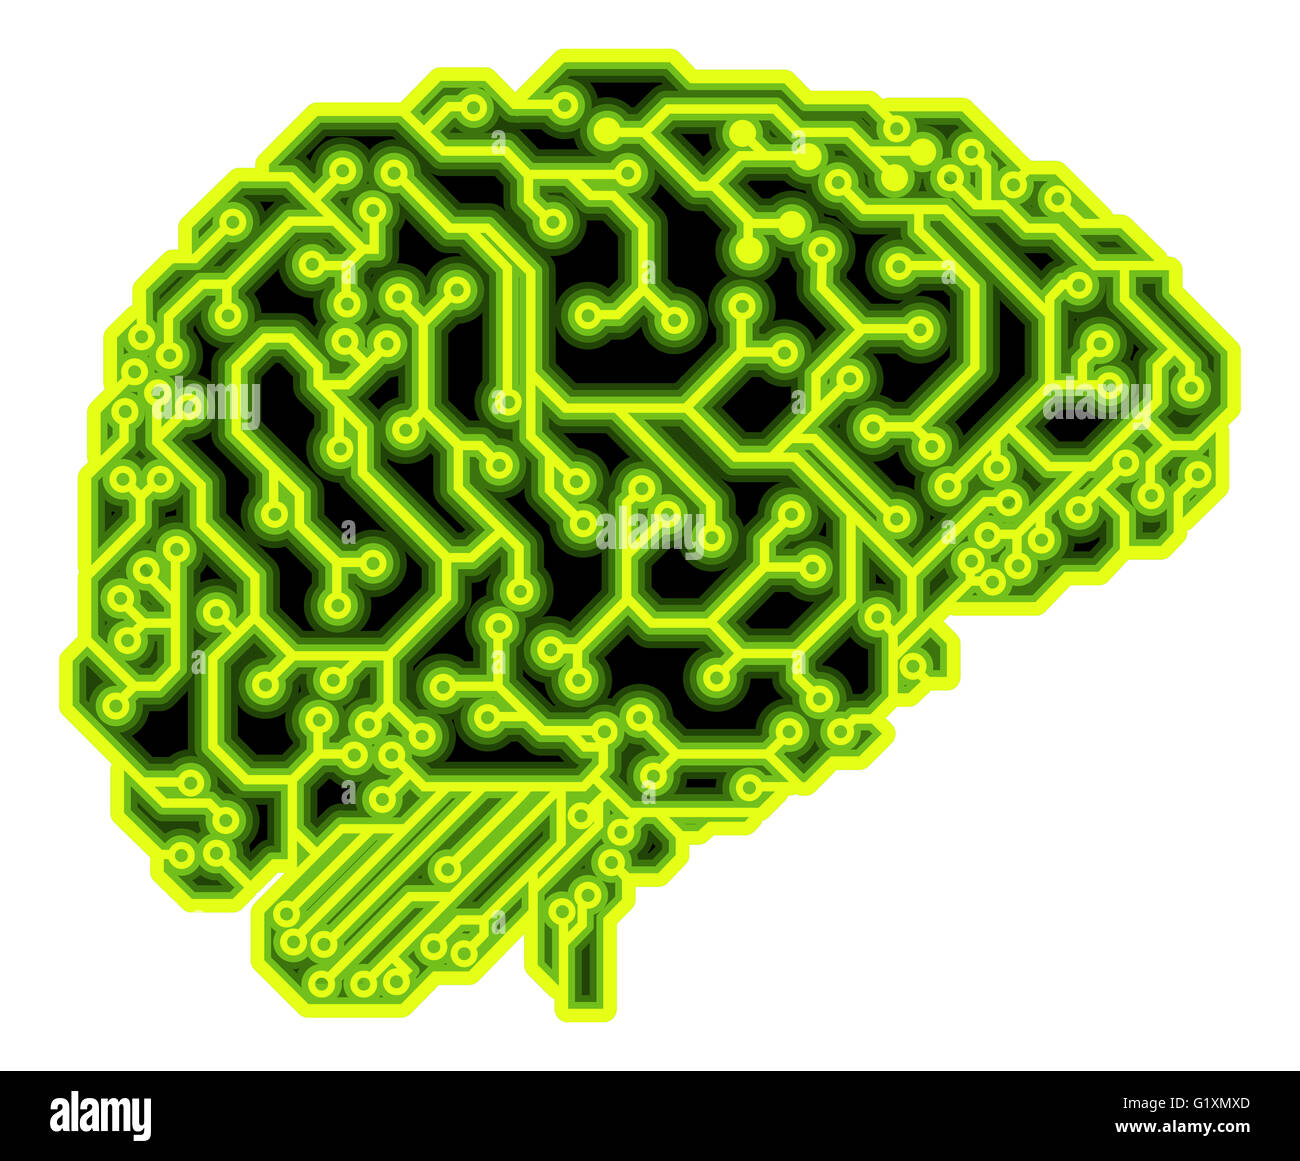 Ein menschliches Gehirn besteht aus elektrischen Schaltungen oder eine Platine kann ein Konzept für künstliche Intelligenz. Stockfoto